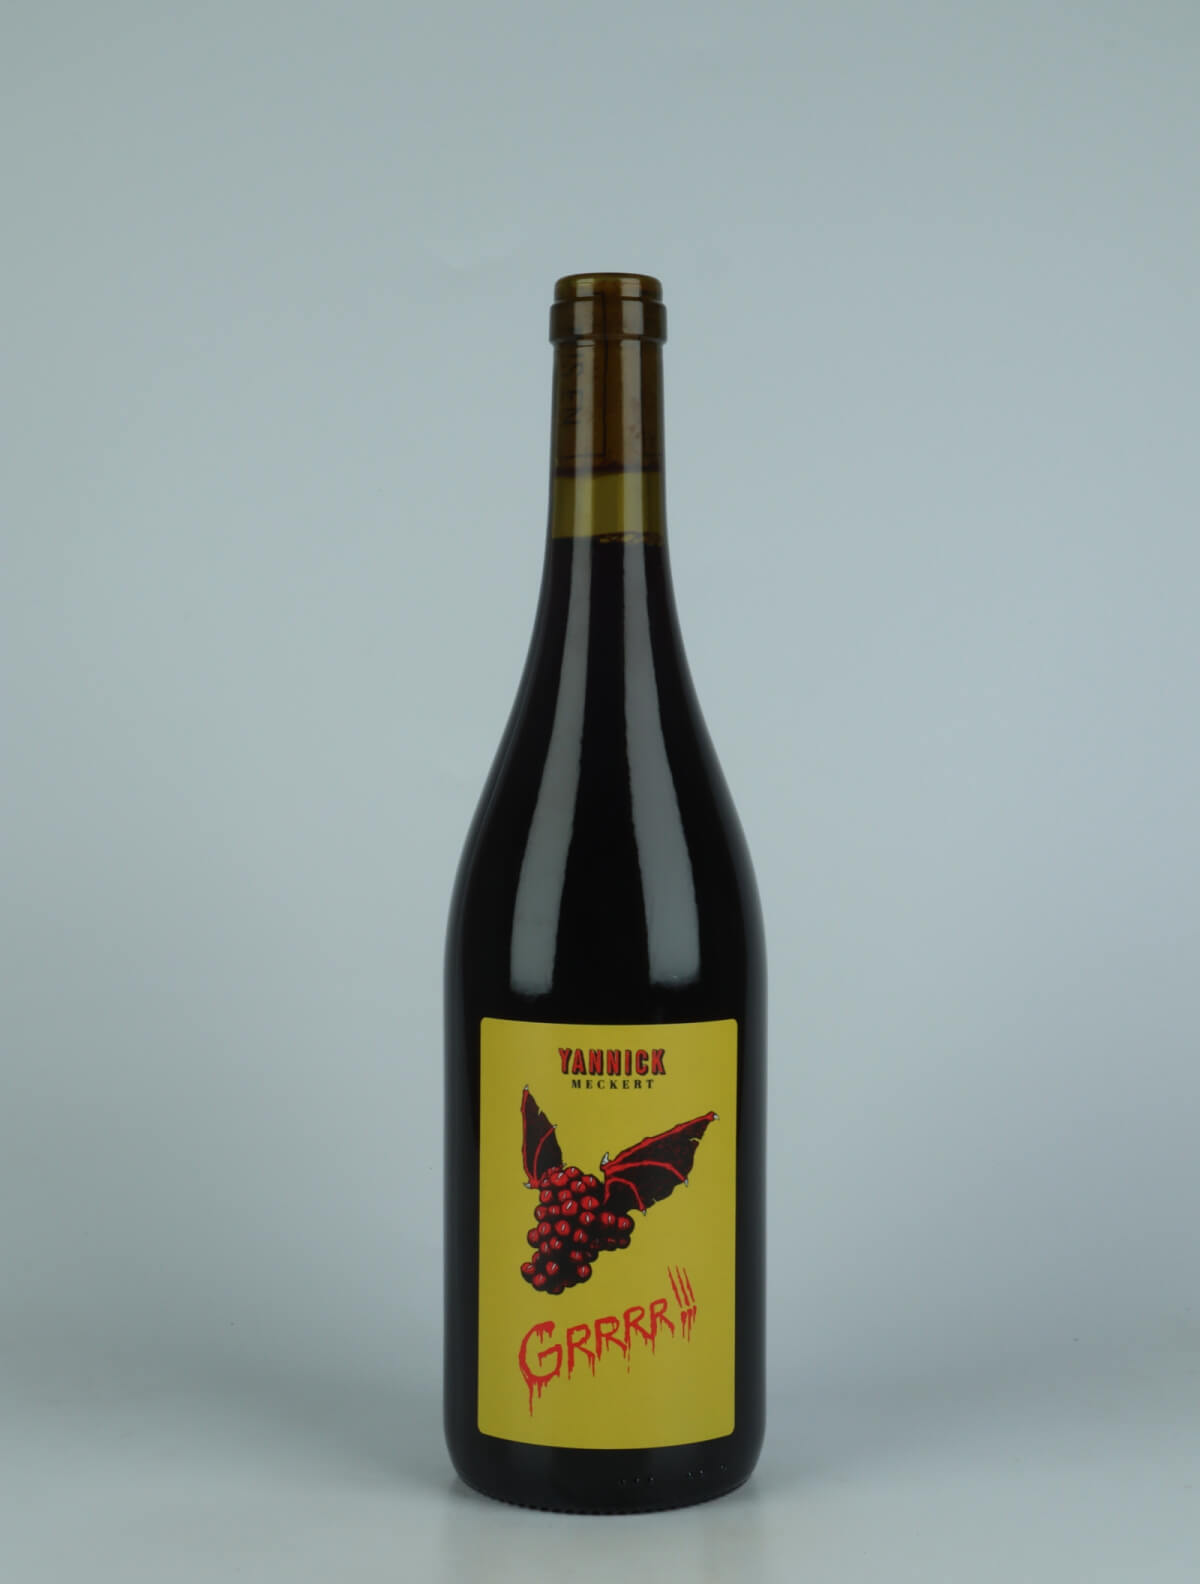 A bottle 2022 Grrrr Red wine from Yannick Meckert, Alsace in France